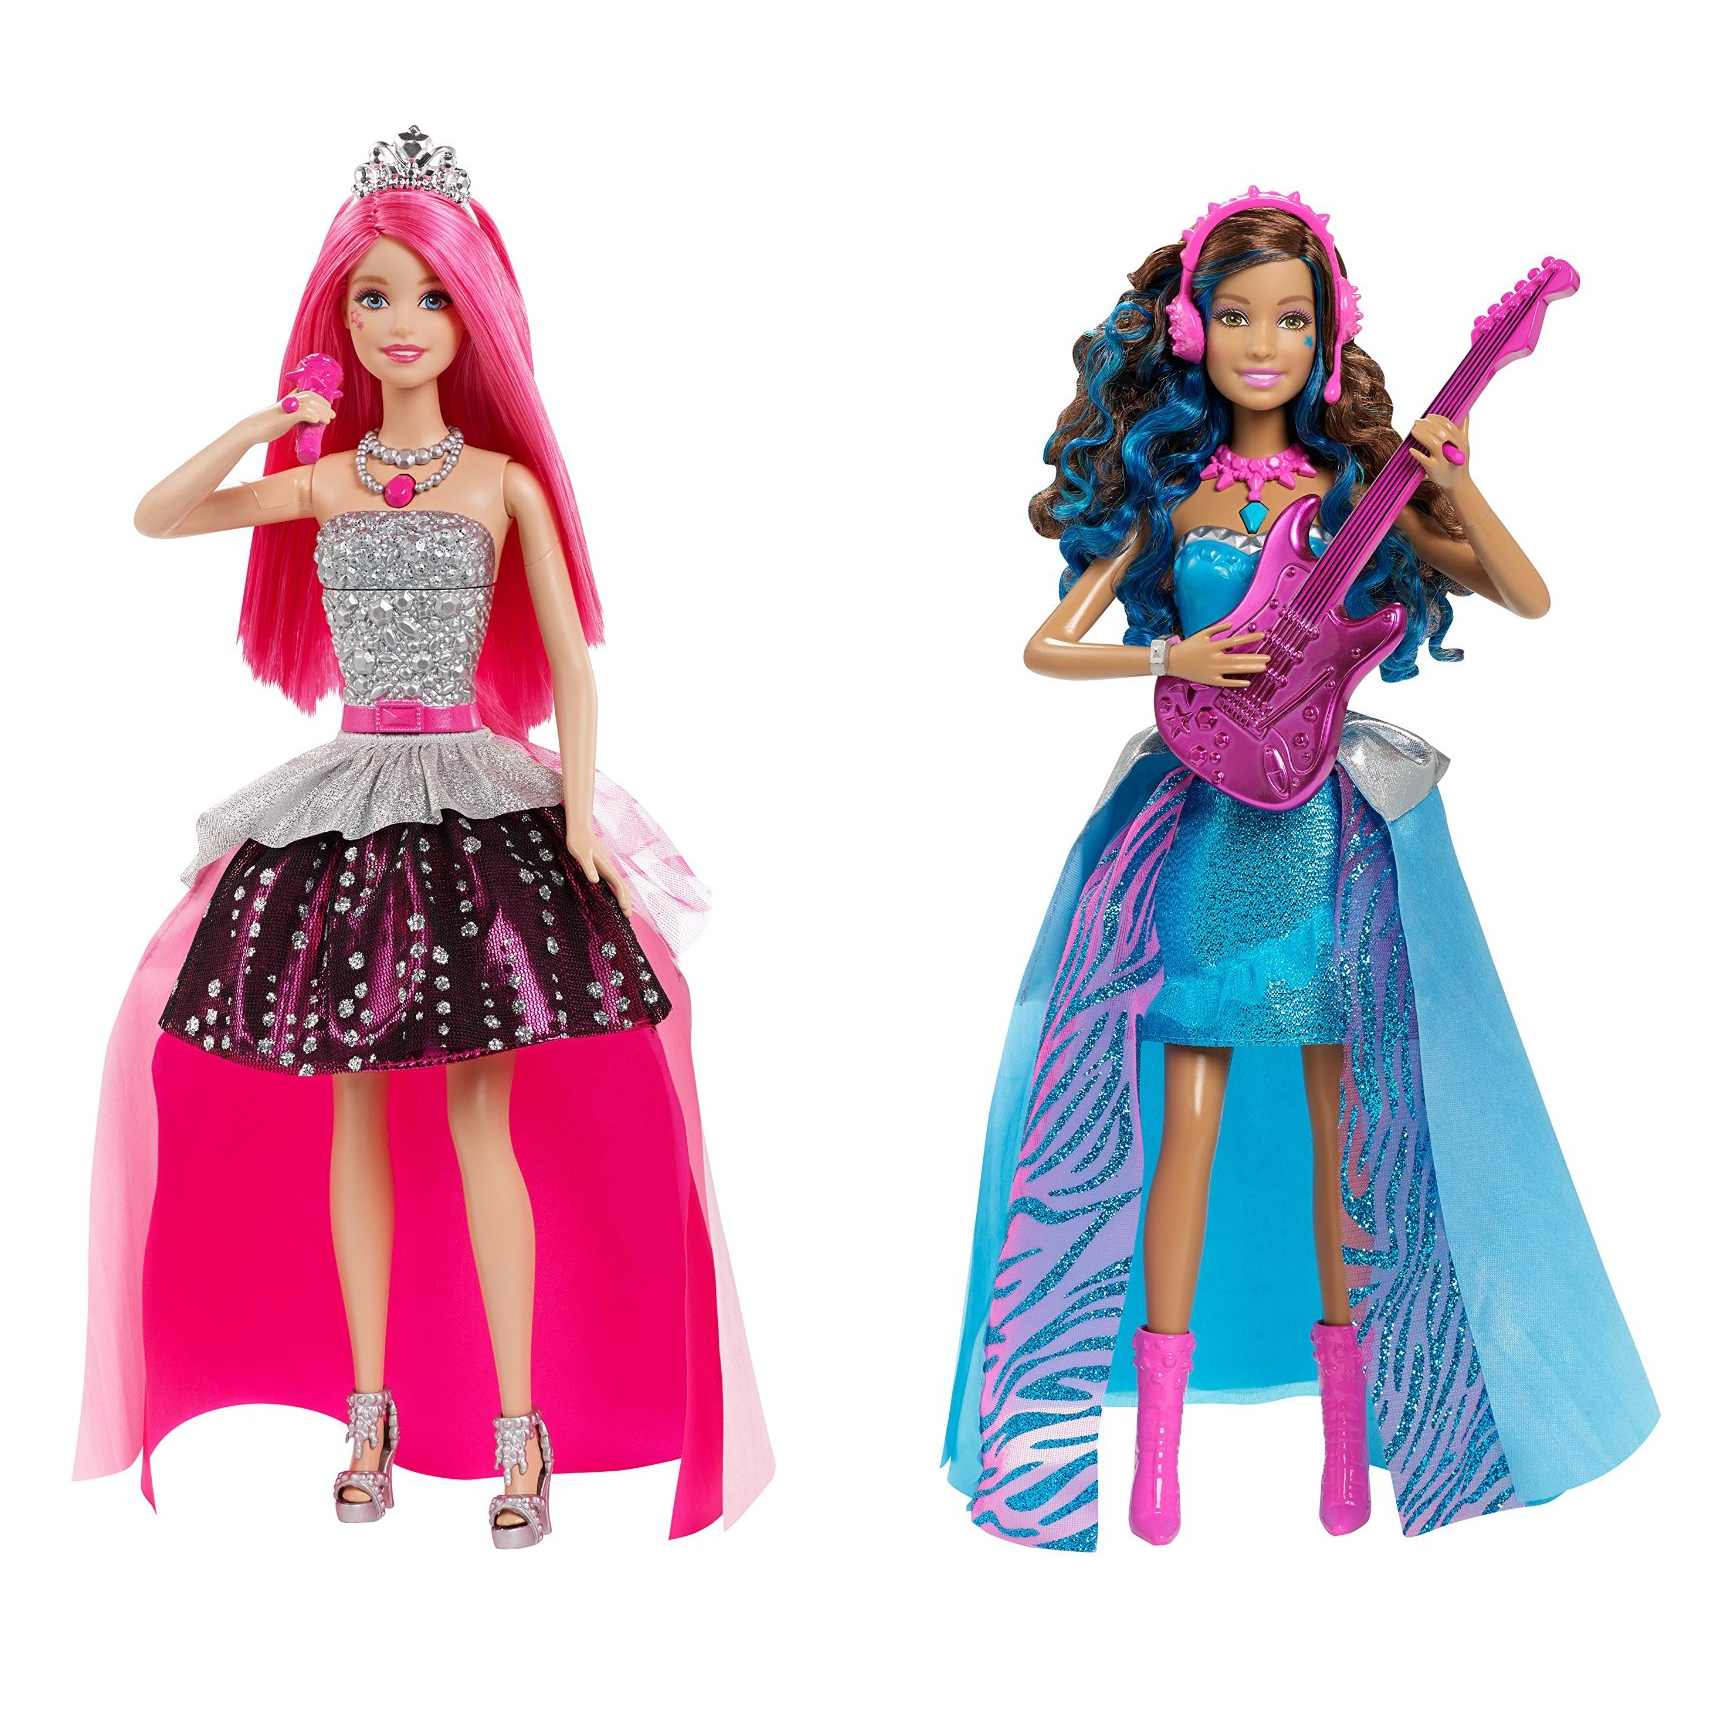 Barbie Rock ‘N royals Singing Erika & Singing Courtney Starting at $10.20!